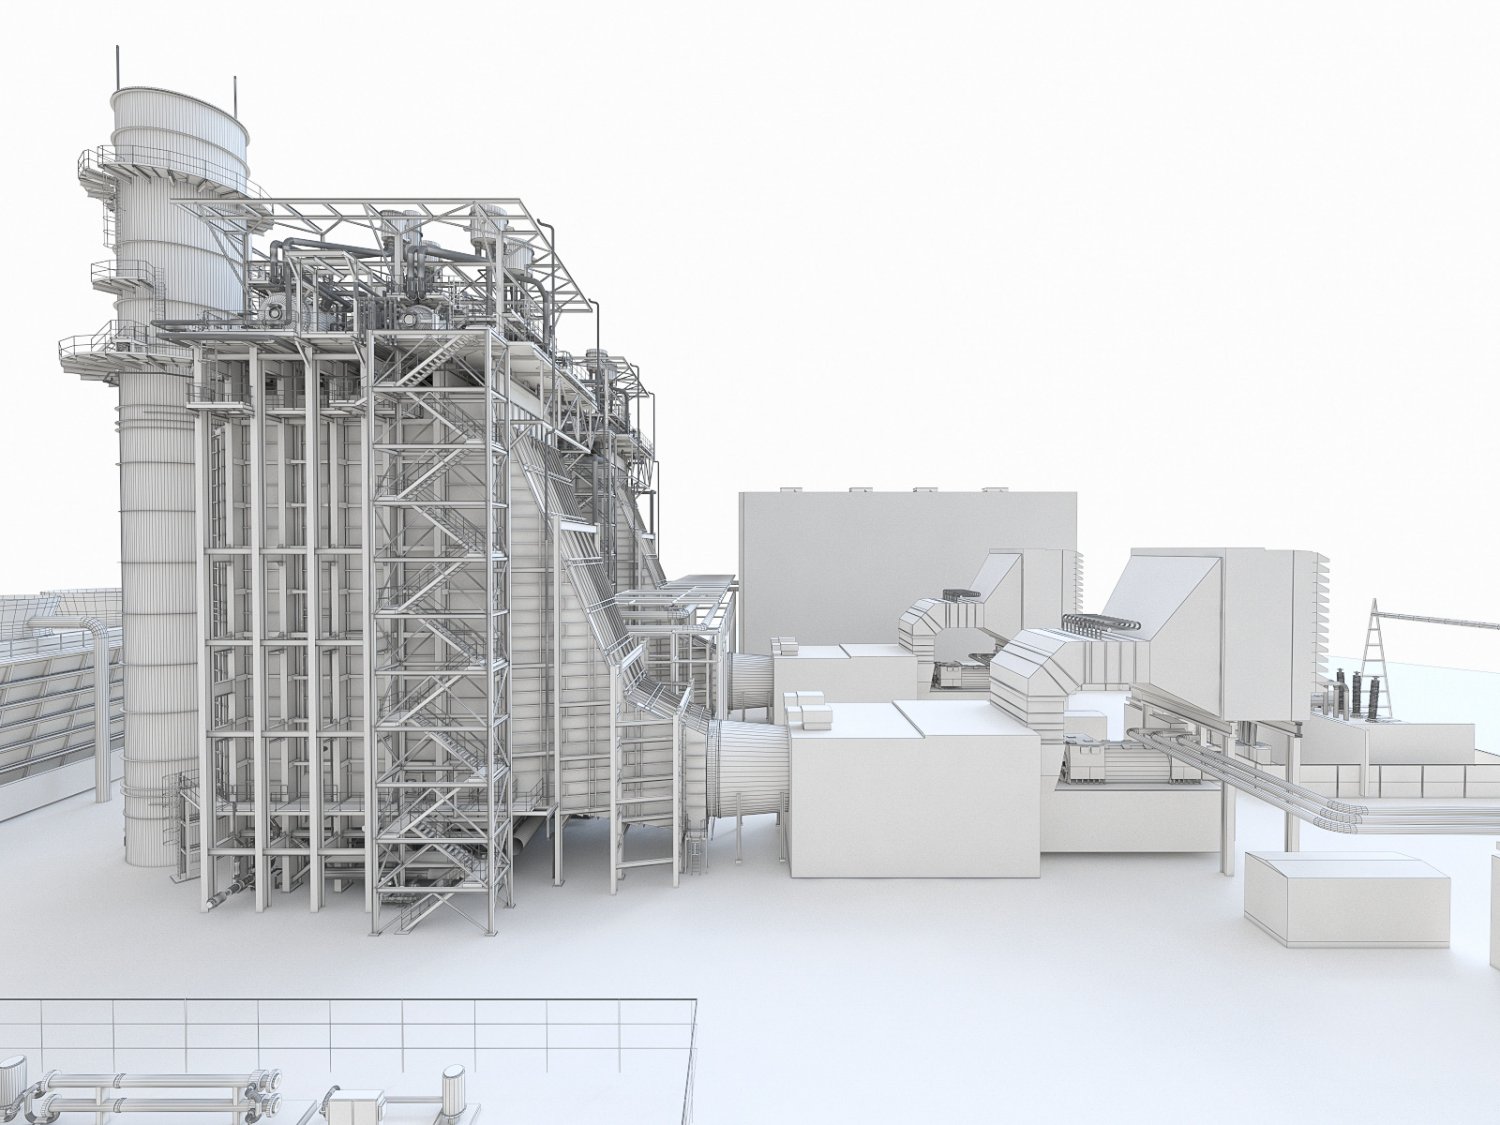 Power plant 3. Power Plant gaz Turbine Project 1600mw. Power Plant gaz Turbine Project 1600mw Syrdarya 1.